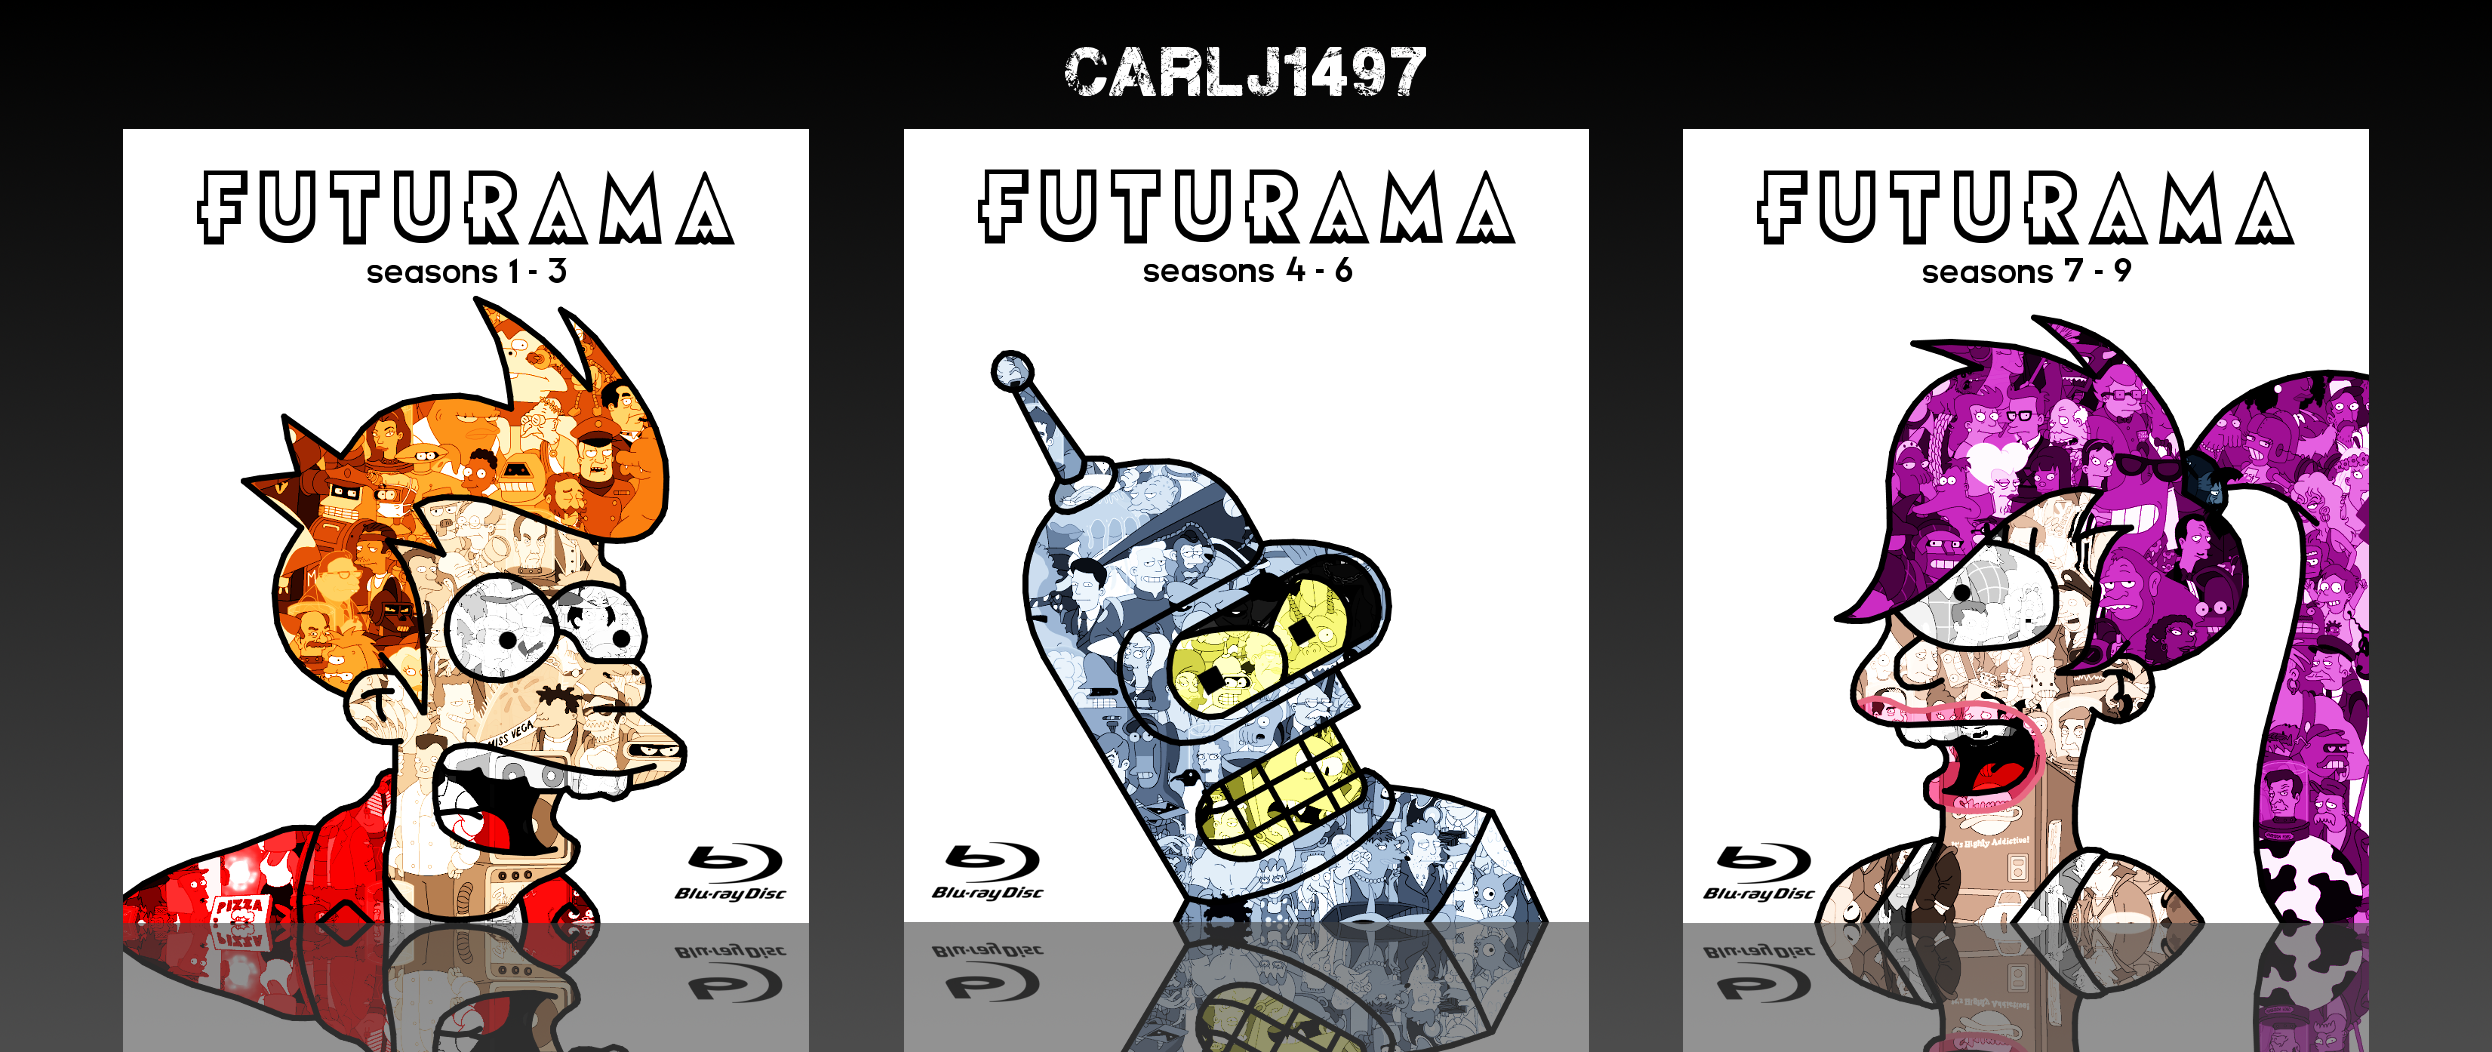 Futurama box cover